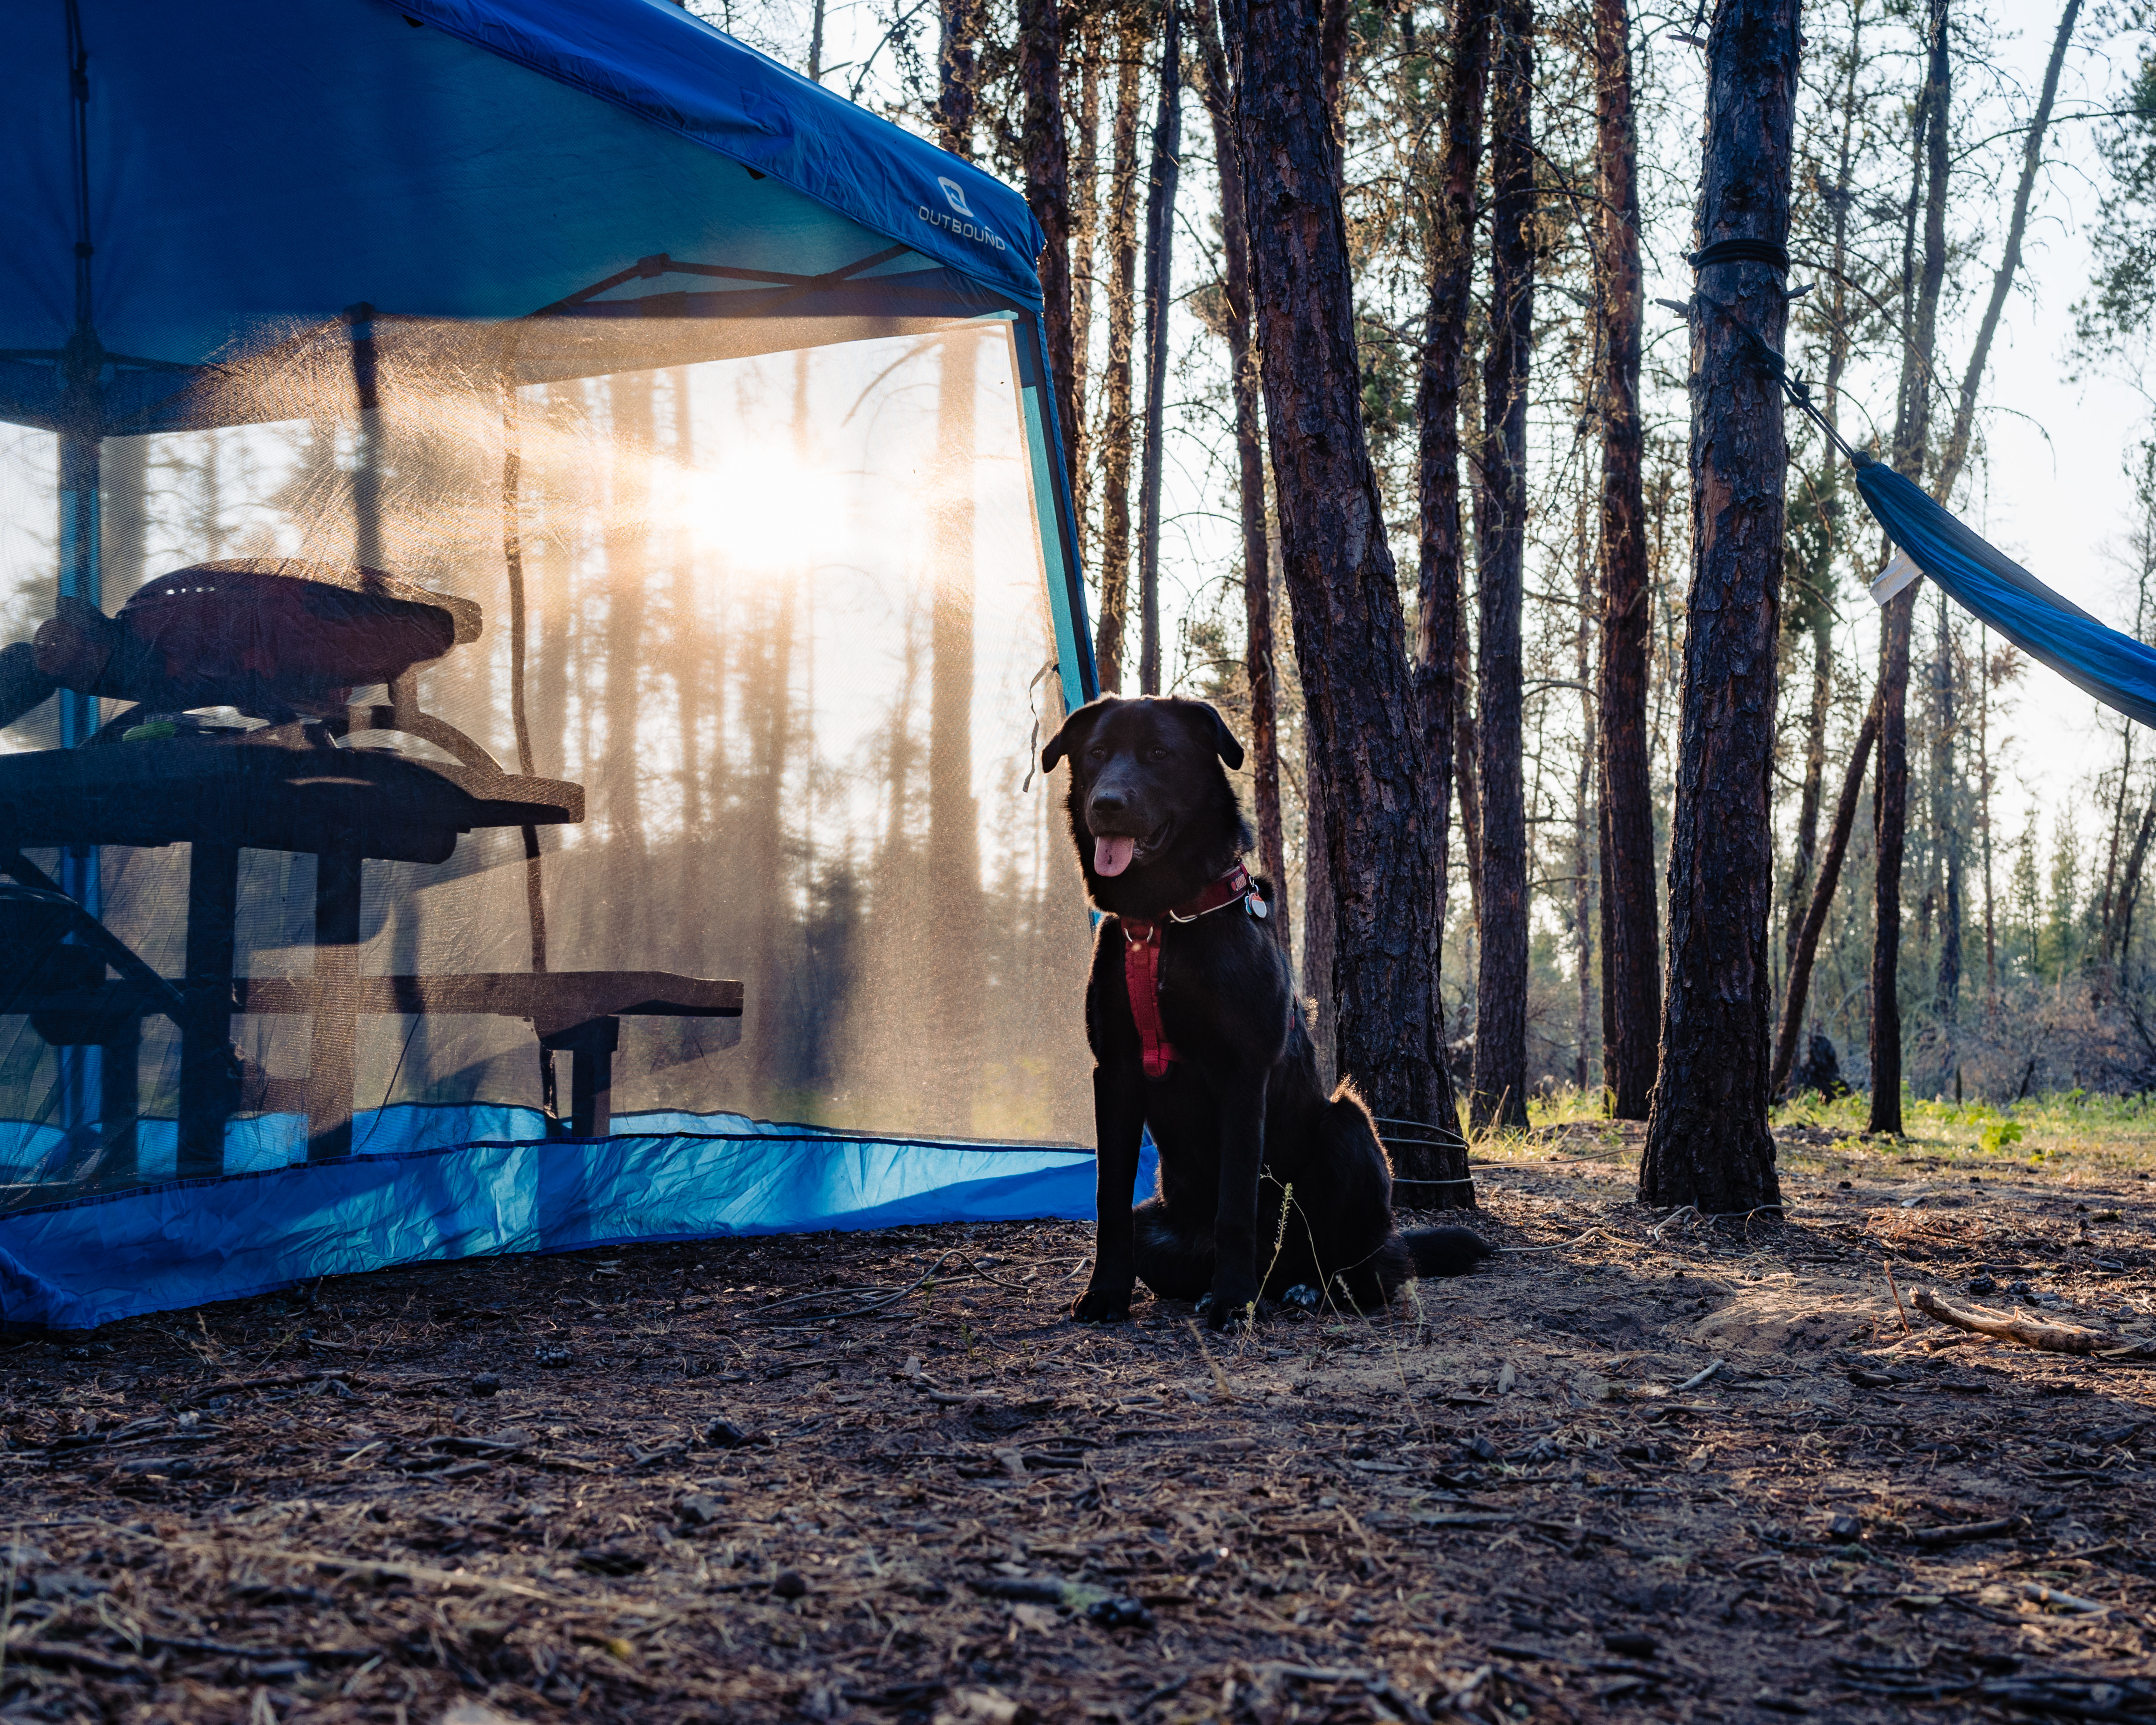 Mara (dog) at Moose Lake Campground · Photo by The 38 Photography